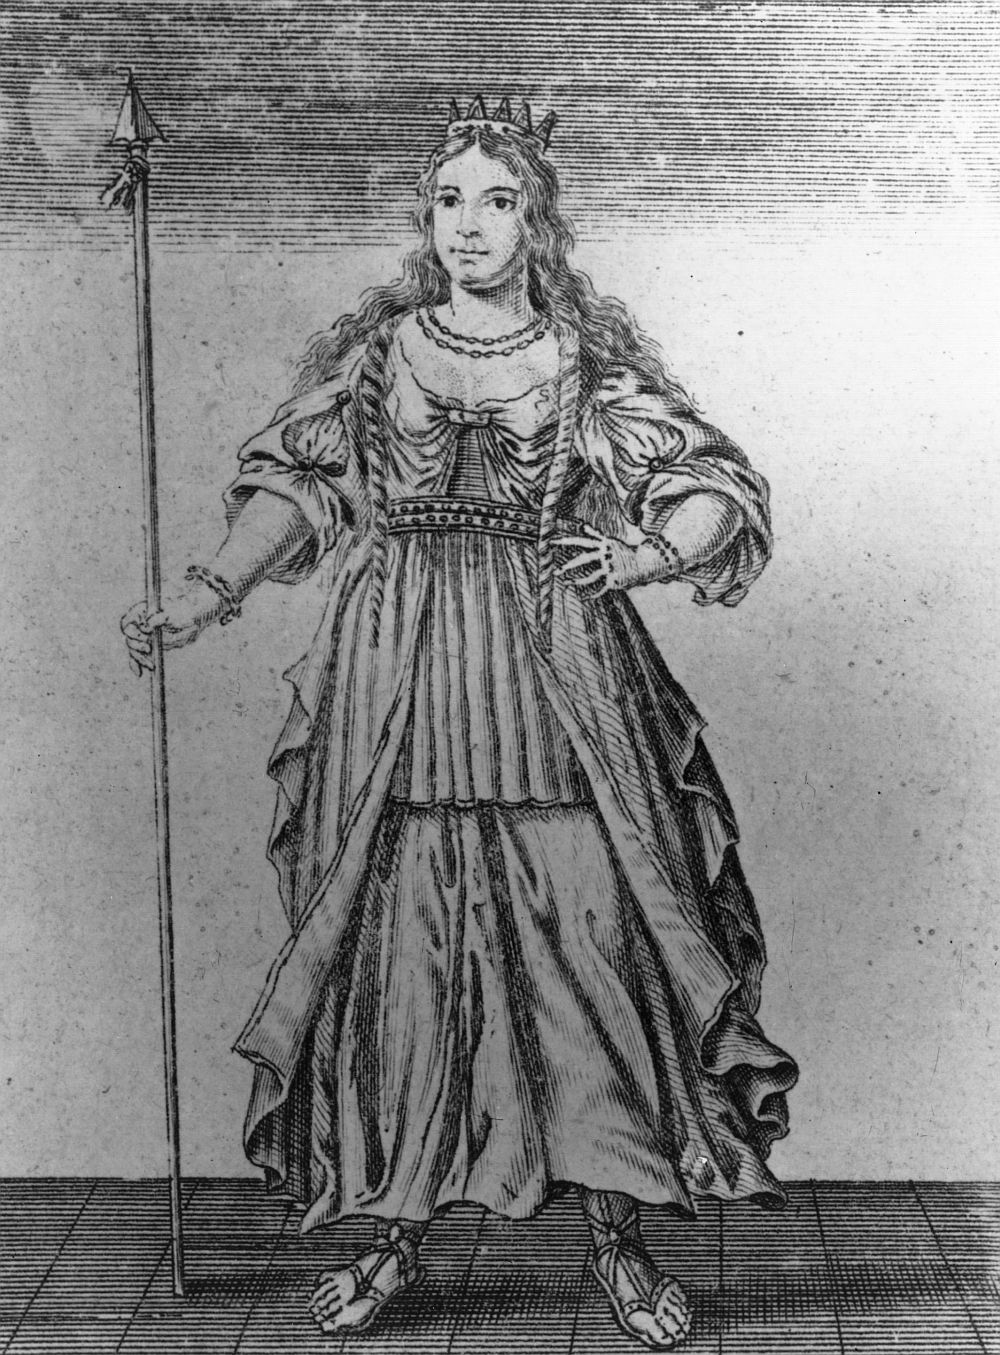 <strong>14. Будика</strong><br>
<br>
Будика е име на кралица на келтското племе ицени, населявало Източна Англия през древността. През 60 г. Будика застава начело на въстание срещу Римската империя, което след година е потушено и тя се самоубива.